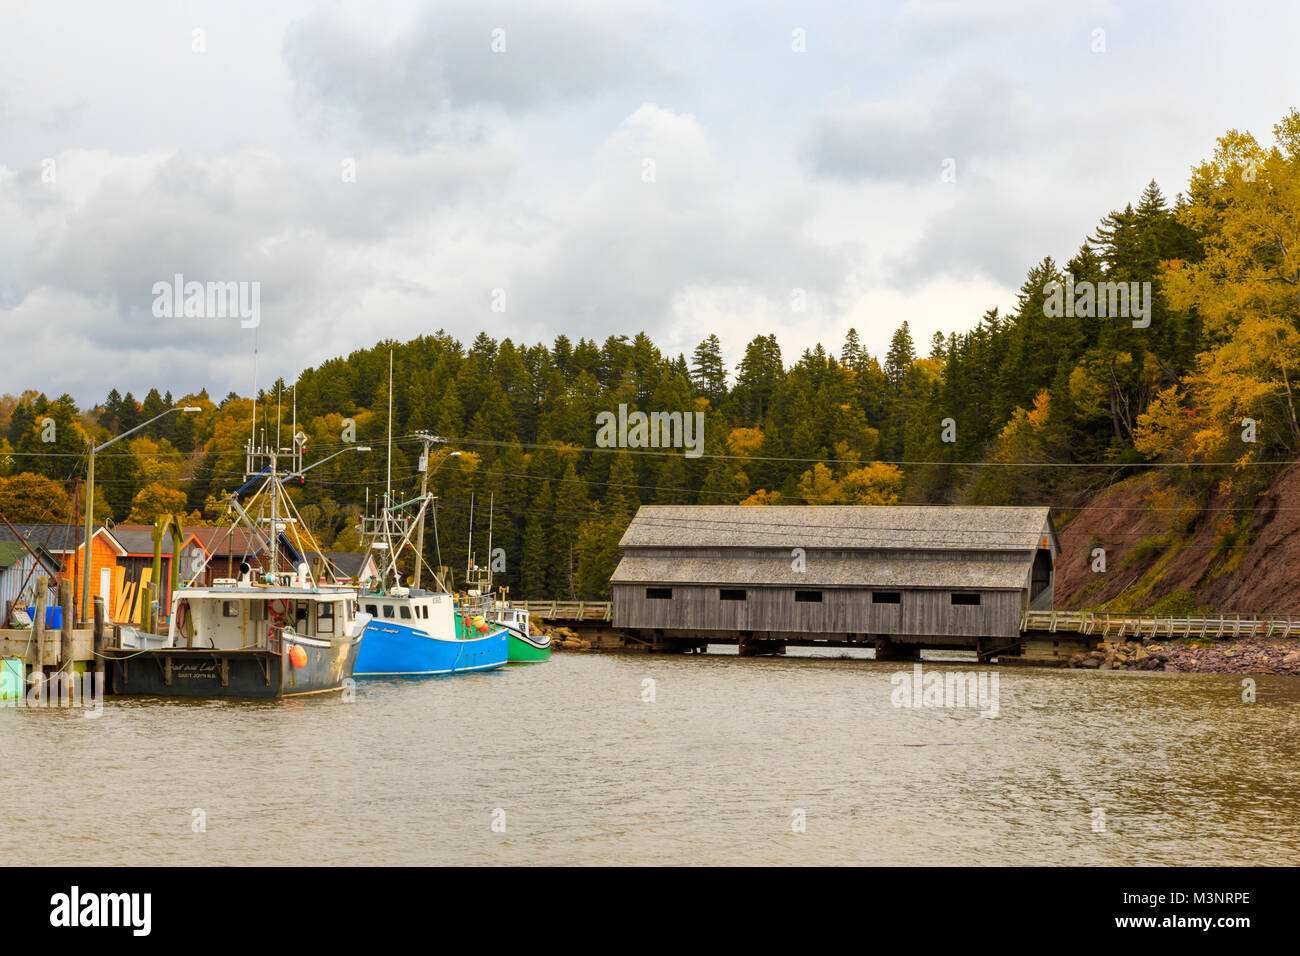 Belles feuilles d'automne, petit village de pêche commerciale, vieux pont couvert, vieux bateaux de pêche colorés amarrés St Martins Baie de Fundy, Nouveau-Brunswick Banque D'Images